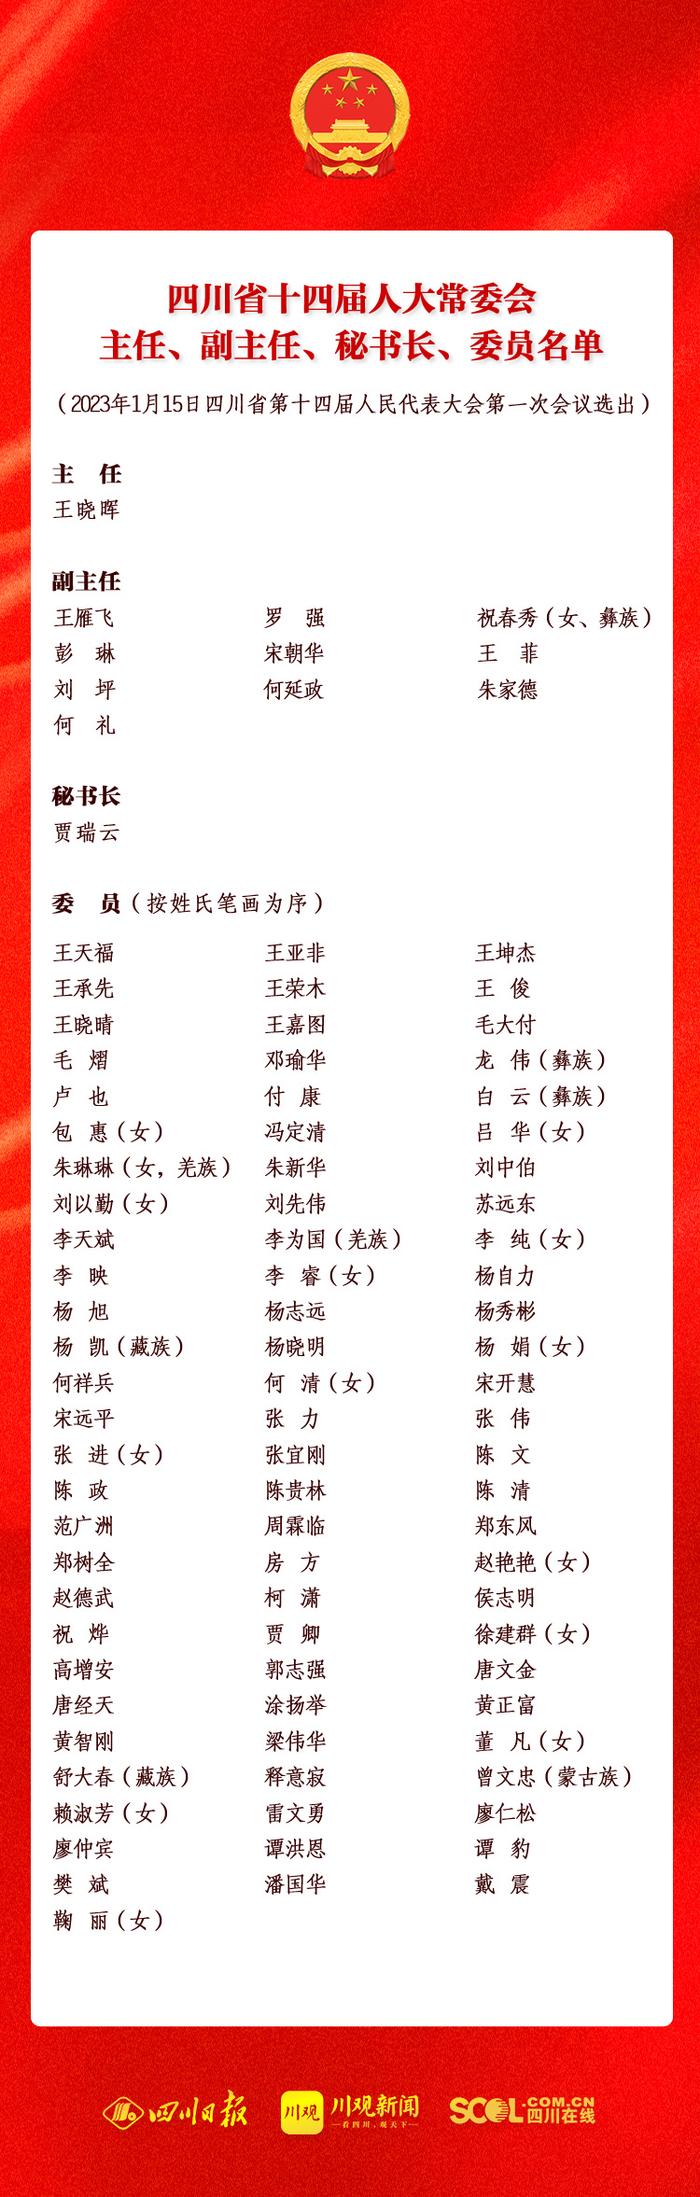 一图速览丨四川省十四届人大常委会主任、副主任、秘书长、委员名单